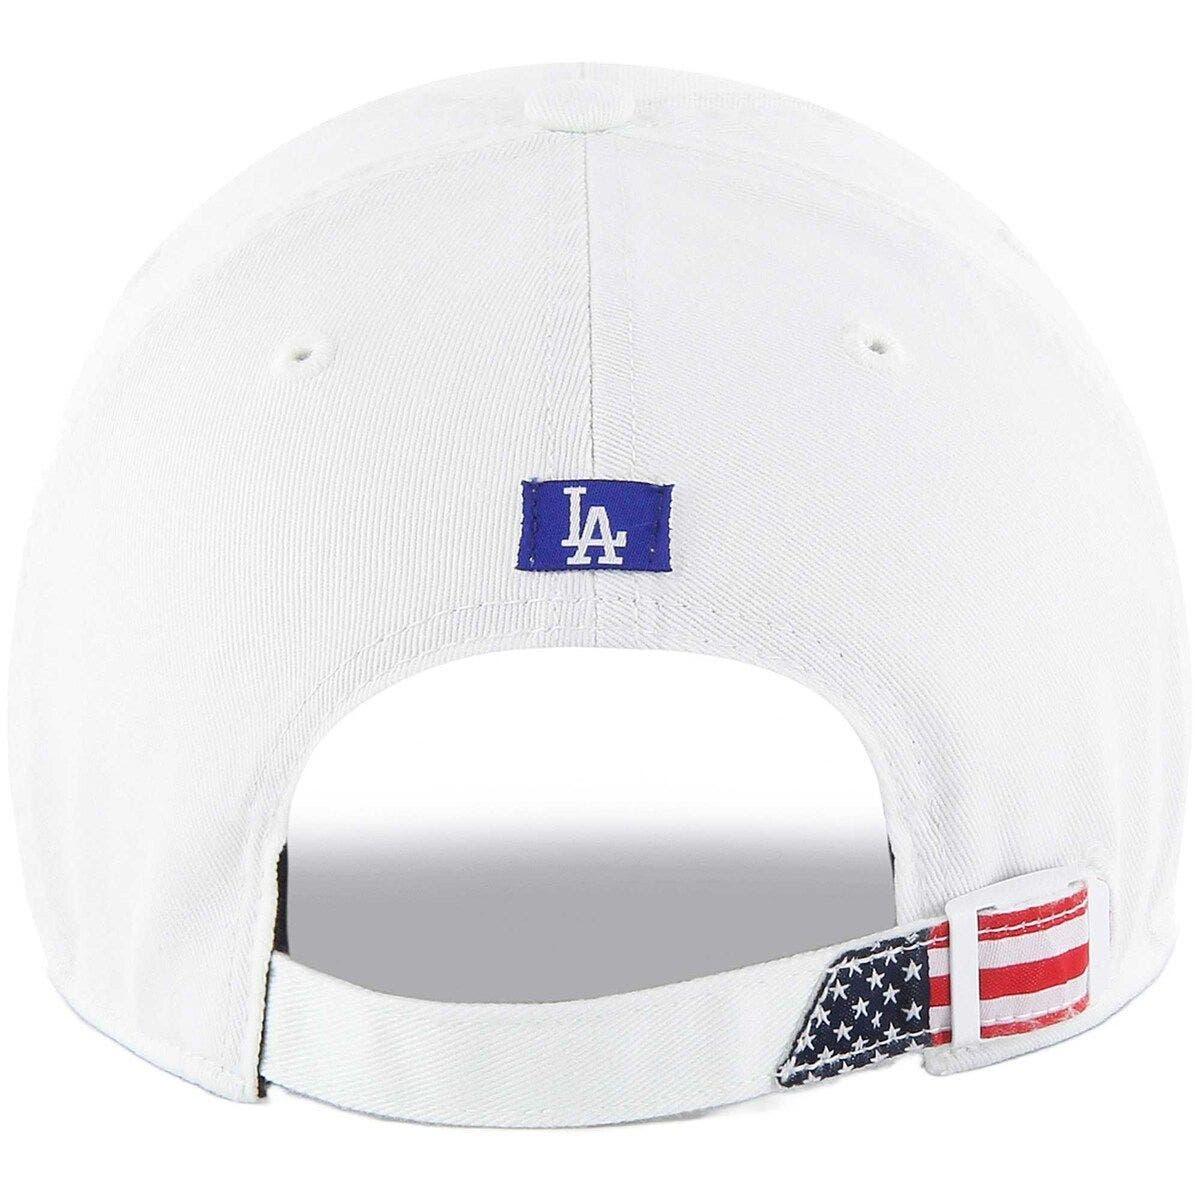 47 Los Angeles Dodgers Cleanup Adjustable Hat Brand Royal Blue